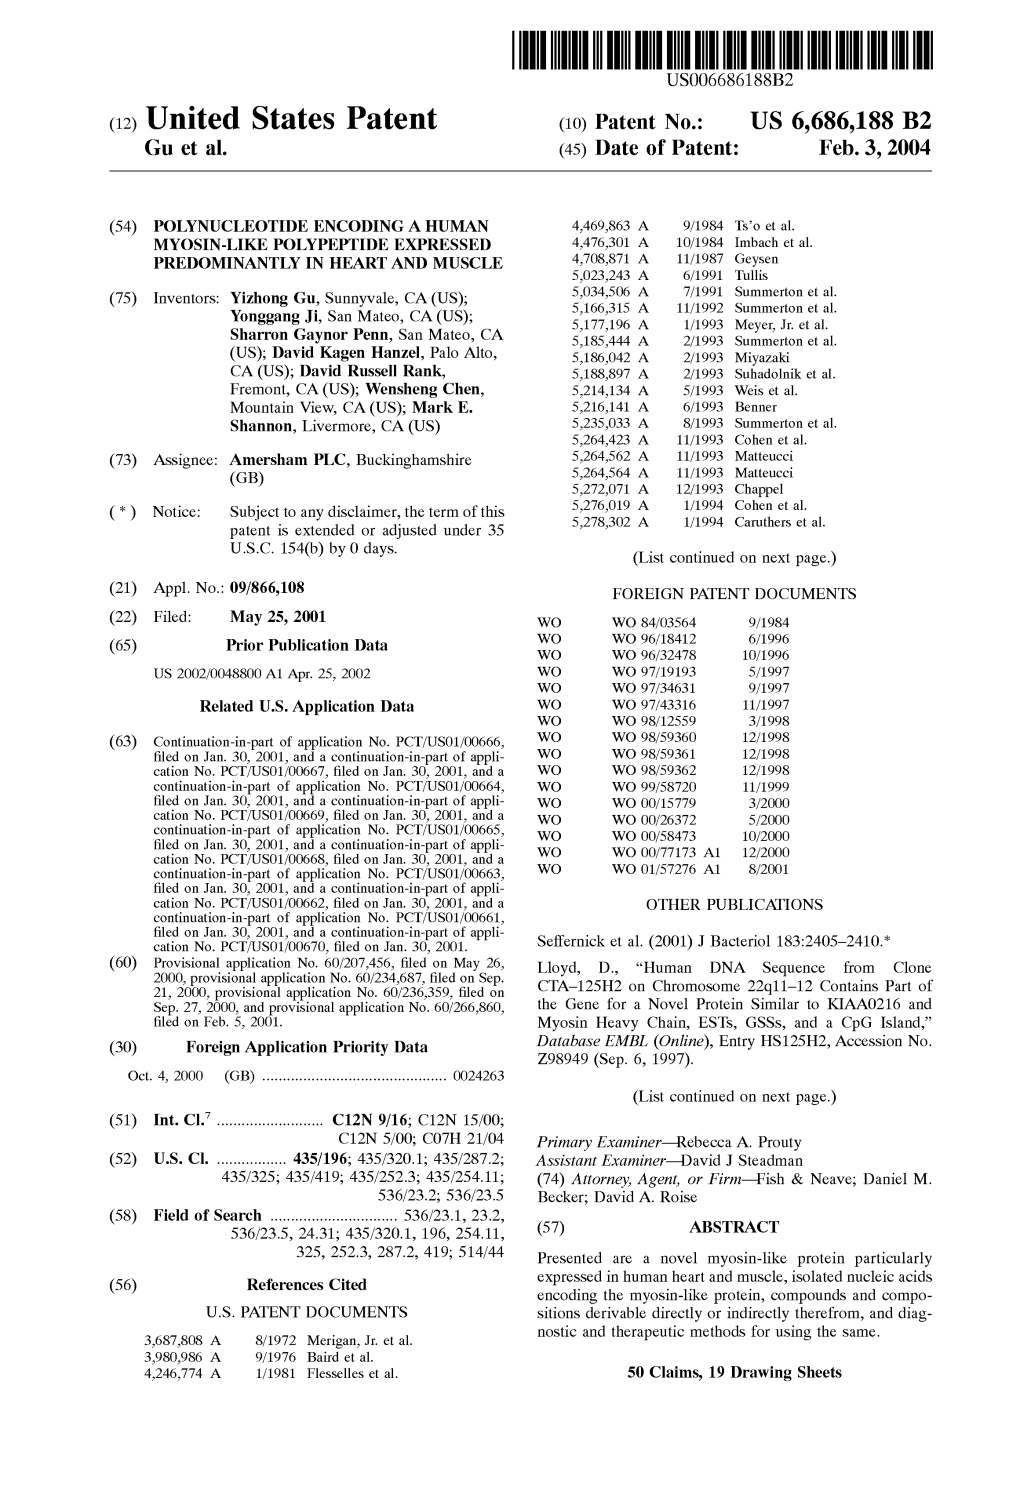 (12) United States Patent (10) Patent No.: US 6,686,188 B2 Gu Et Al